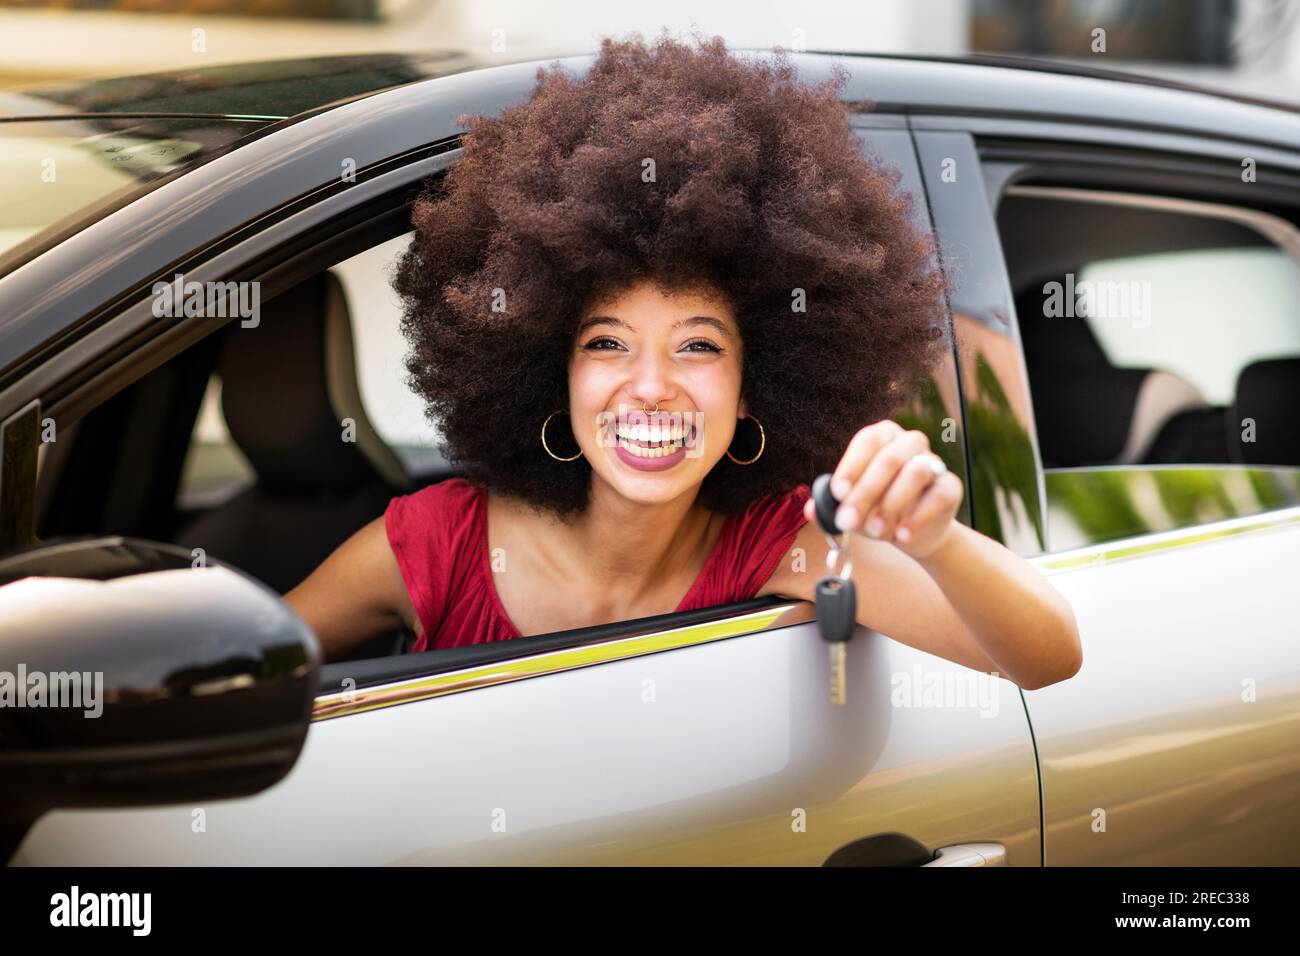 Felice donna afro-americana con capelli afro e trucco sorridente e guardando la macchina fotografica mentre si siede in una macchina nuova e mostra la chiave della macchina Foto Stock